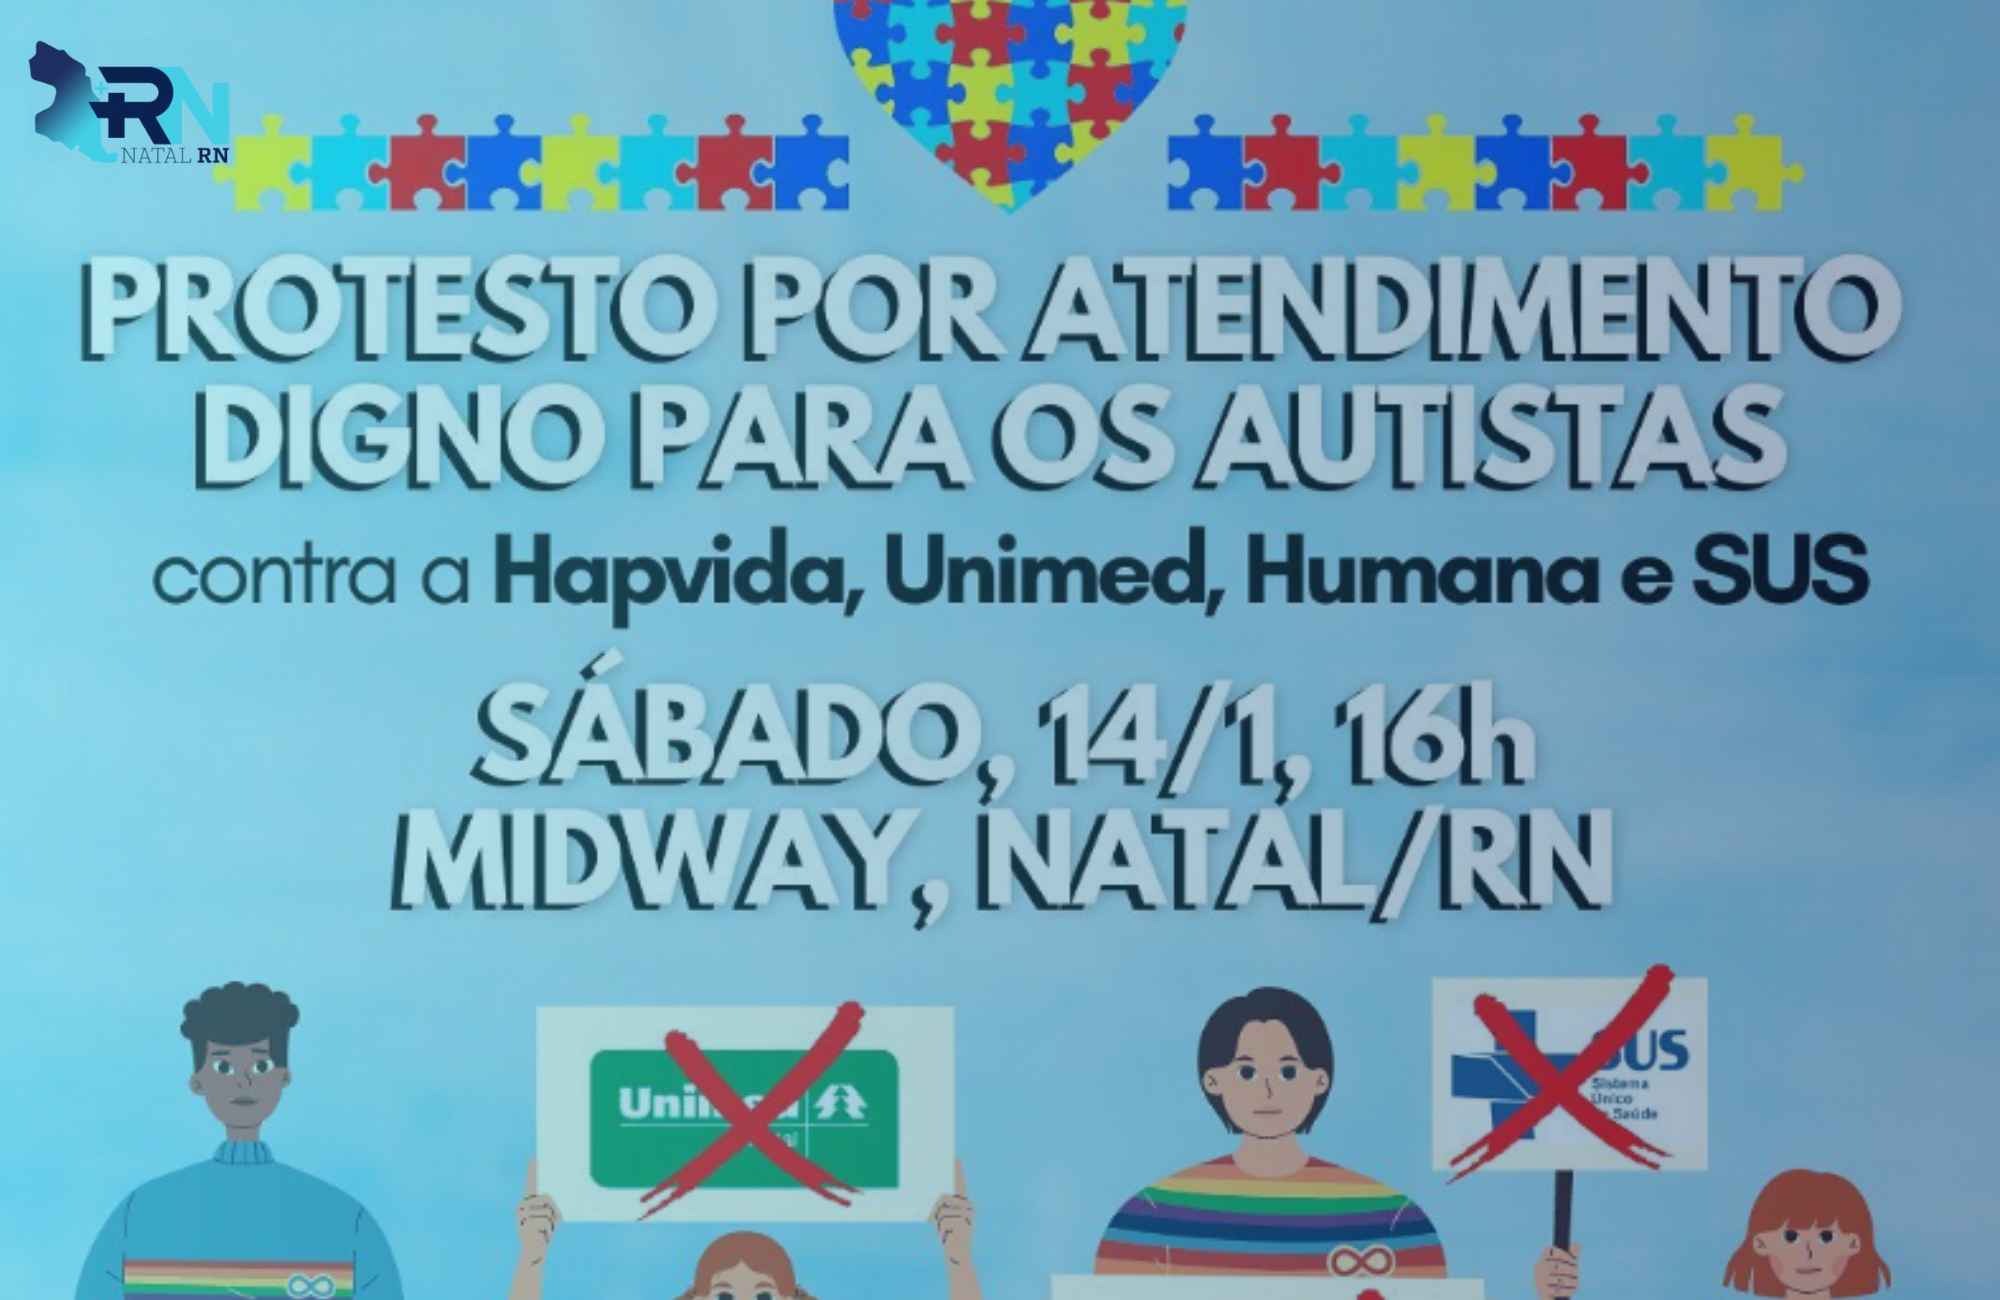 Crianças autistas sofrem com falta de atendimento nos planos de saúde:  protesto em Natal!